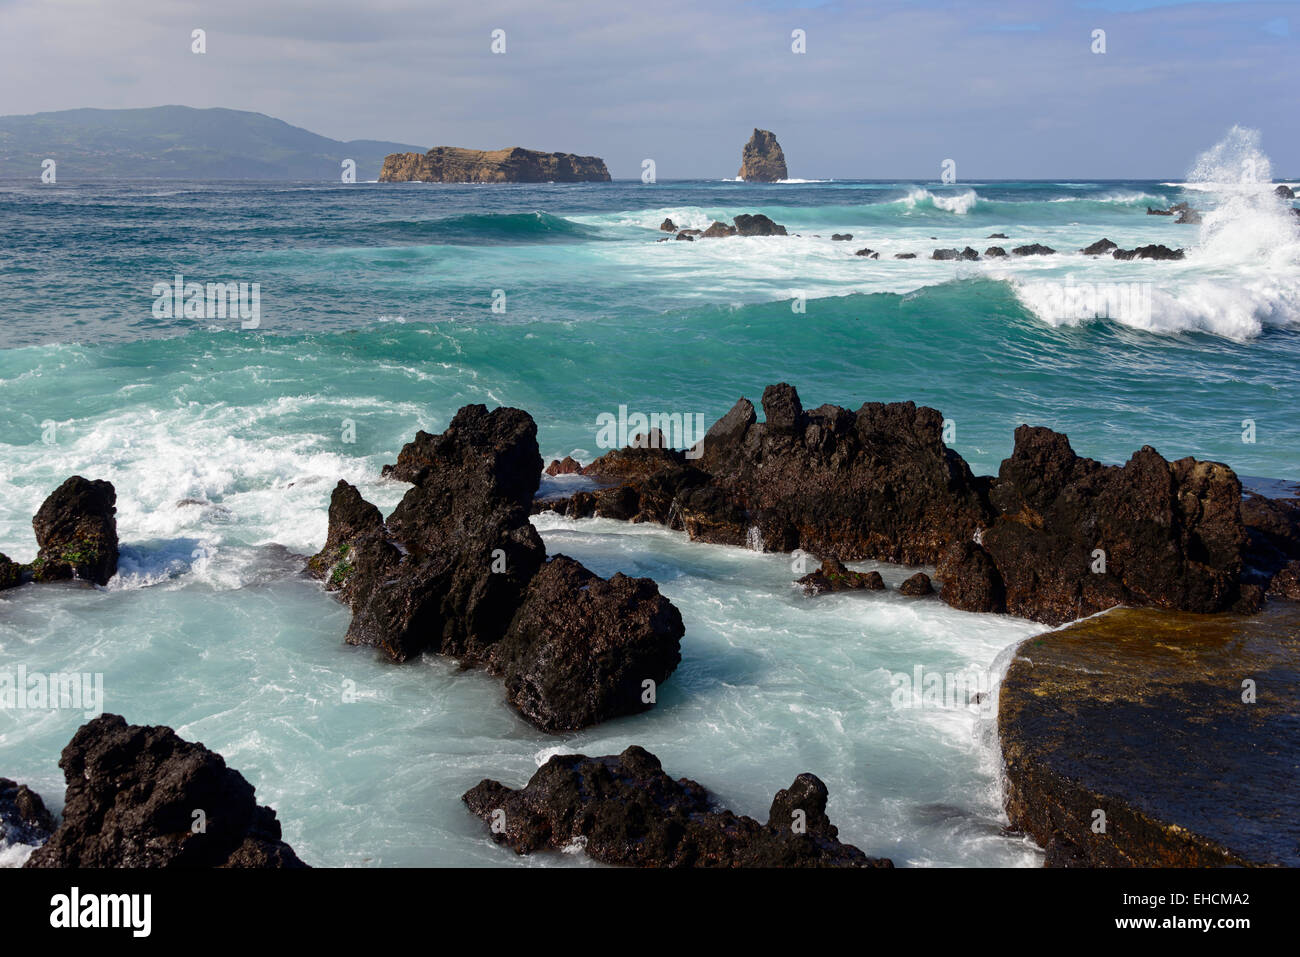 Onde, surf, vedute delle isole Deitado e Em Pe, Areia Funda, isola Pico, Azzorre, Portogallo Foto Stock